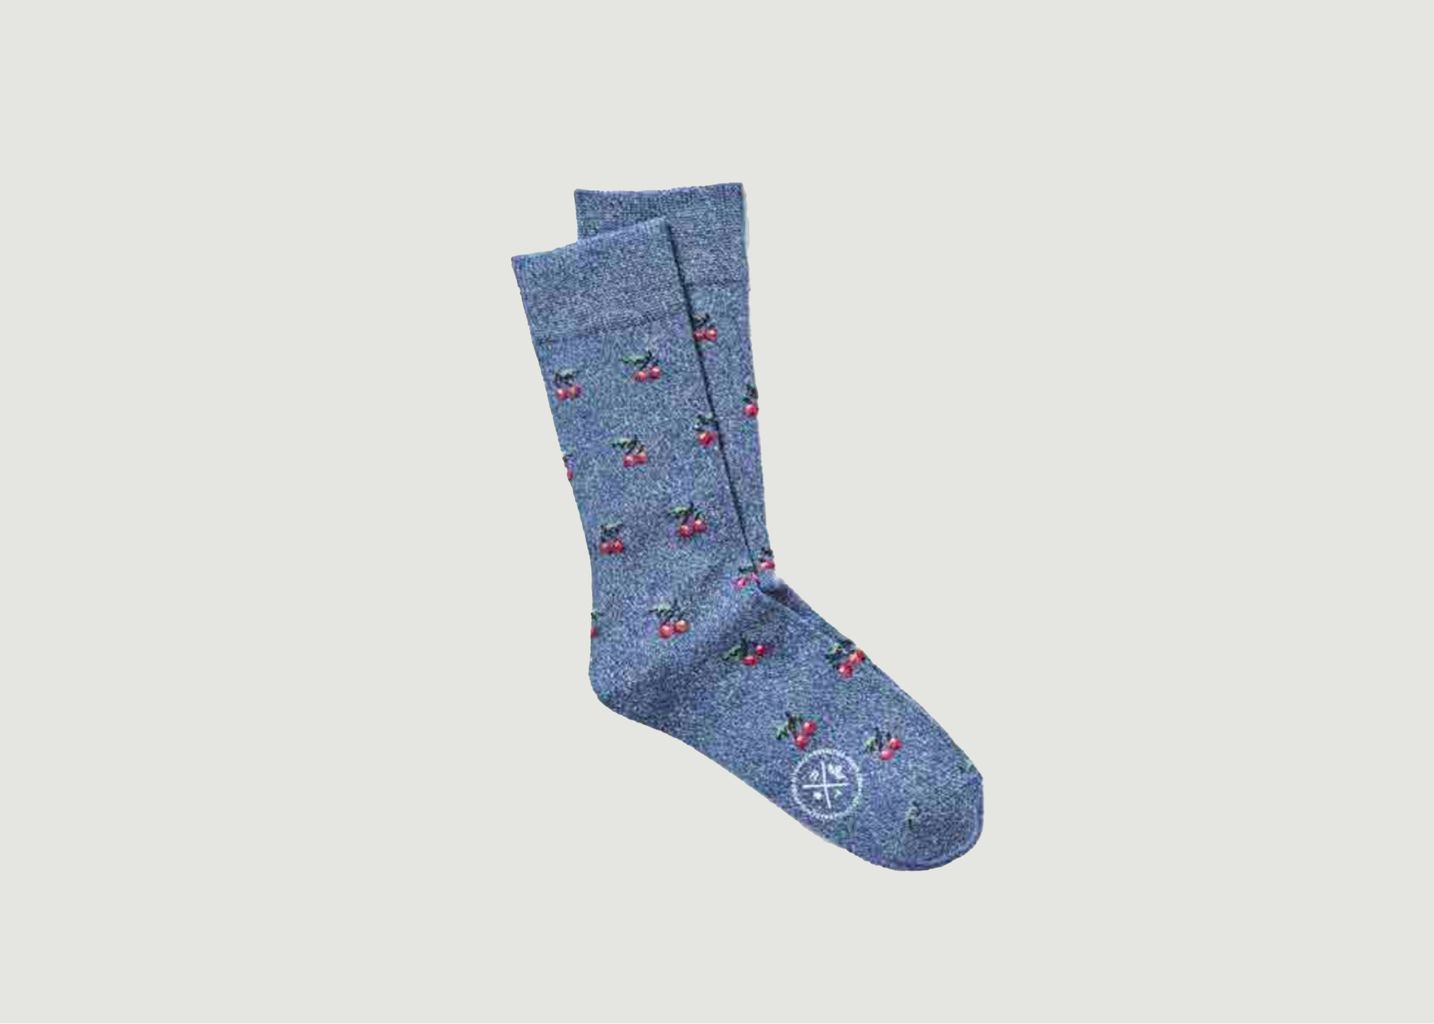 Socken mit Cherry-Muster - Royalties